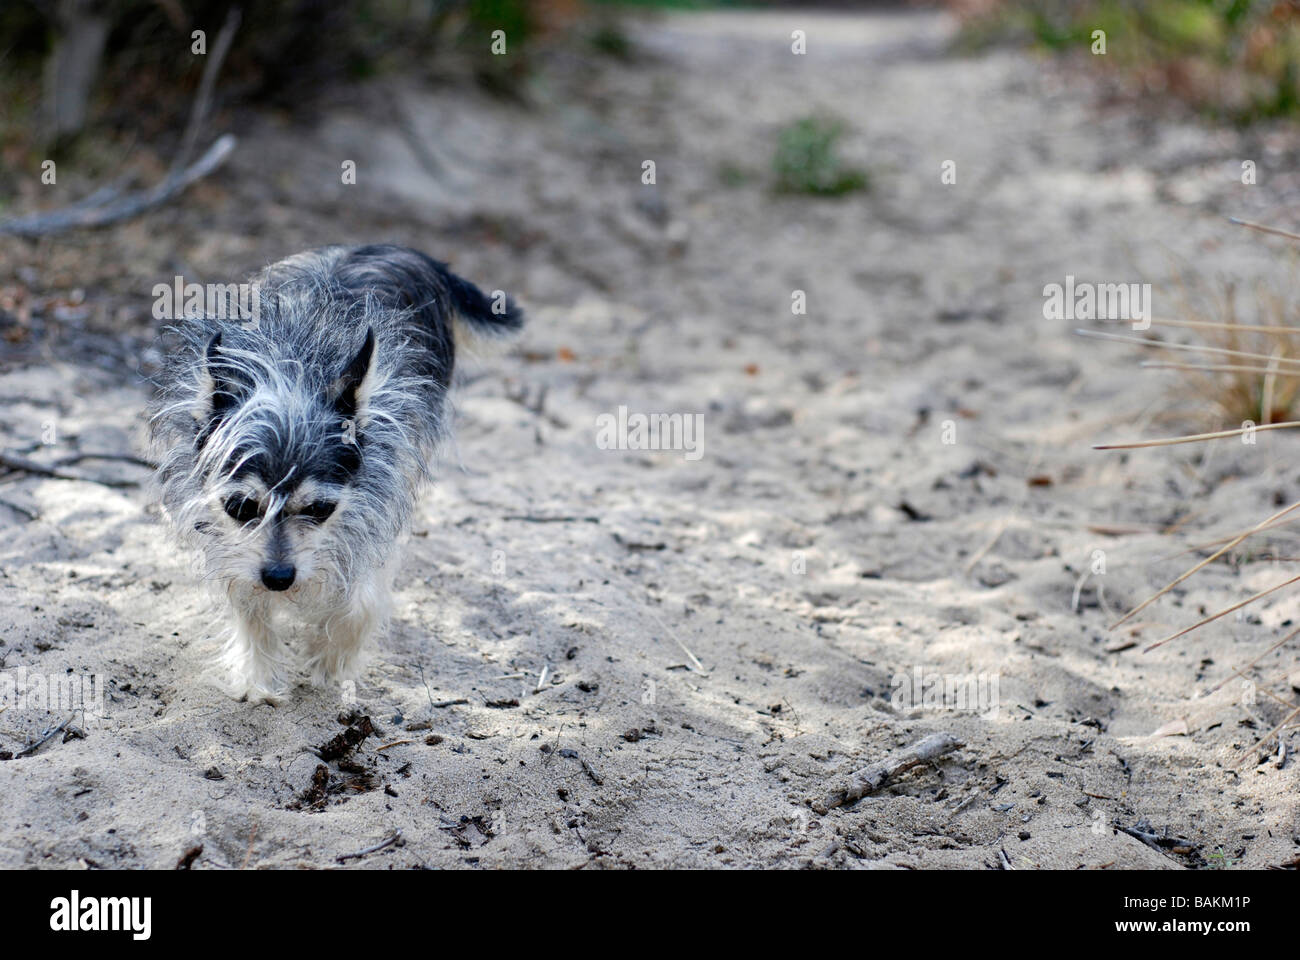 Small dog walking along beach path Stock Photo